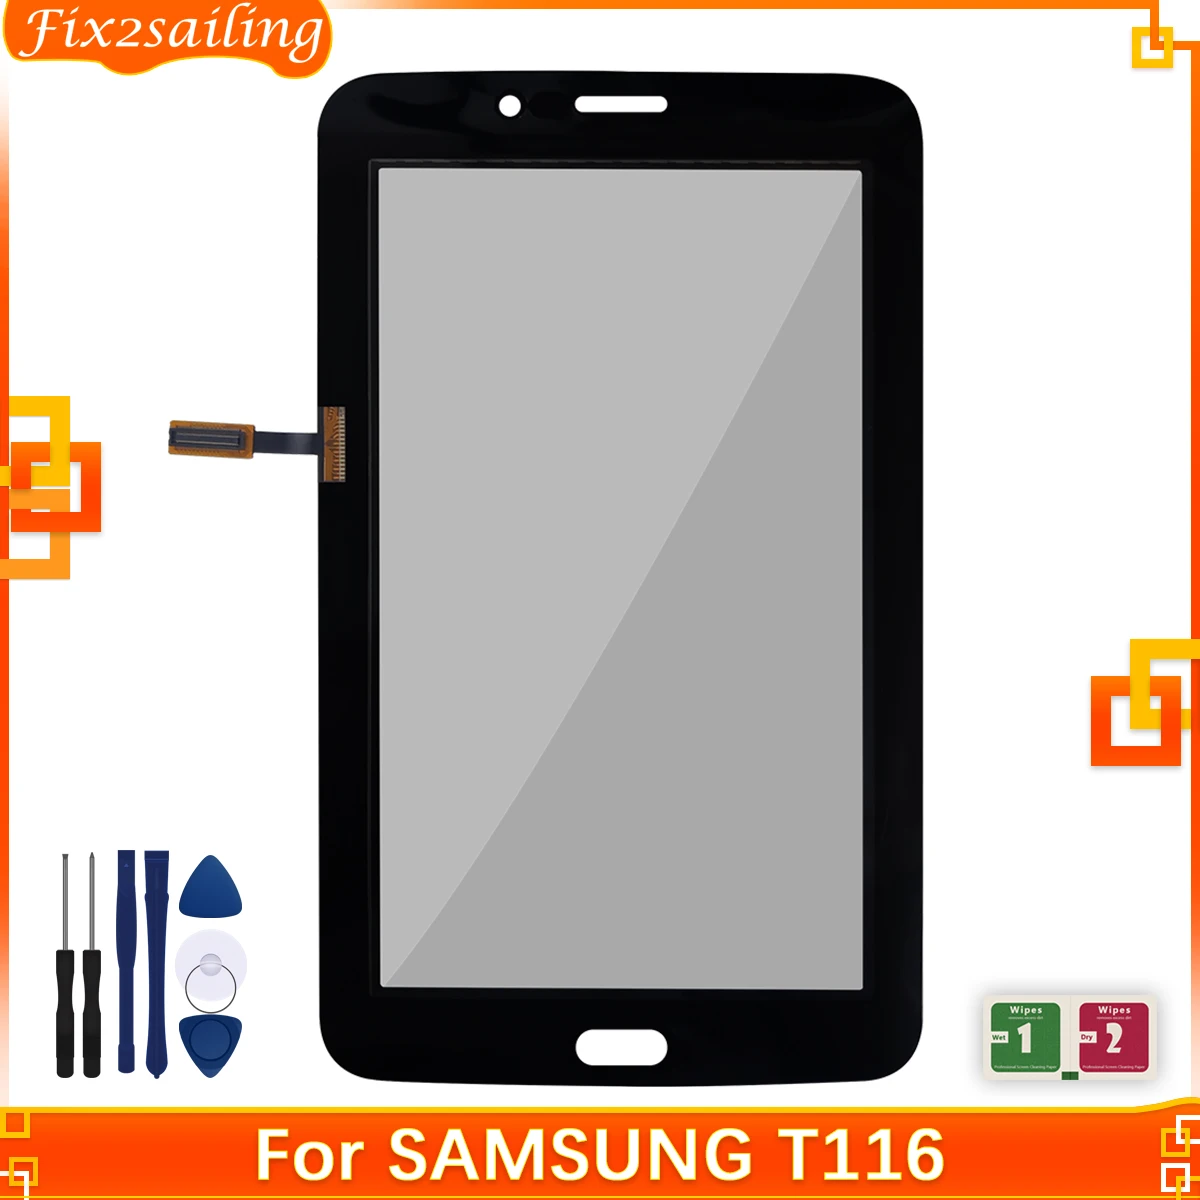 Стекло Для Samsung Galaxy Tab 3 Lite 7.0 SM-T110 T110 Сенсорный Экран T111 T113 T116 Дигитайзер Стеклянная Панель Сенсор Замена Деталей + Инструмент